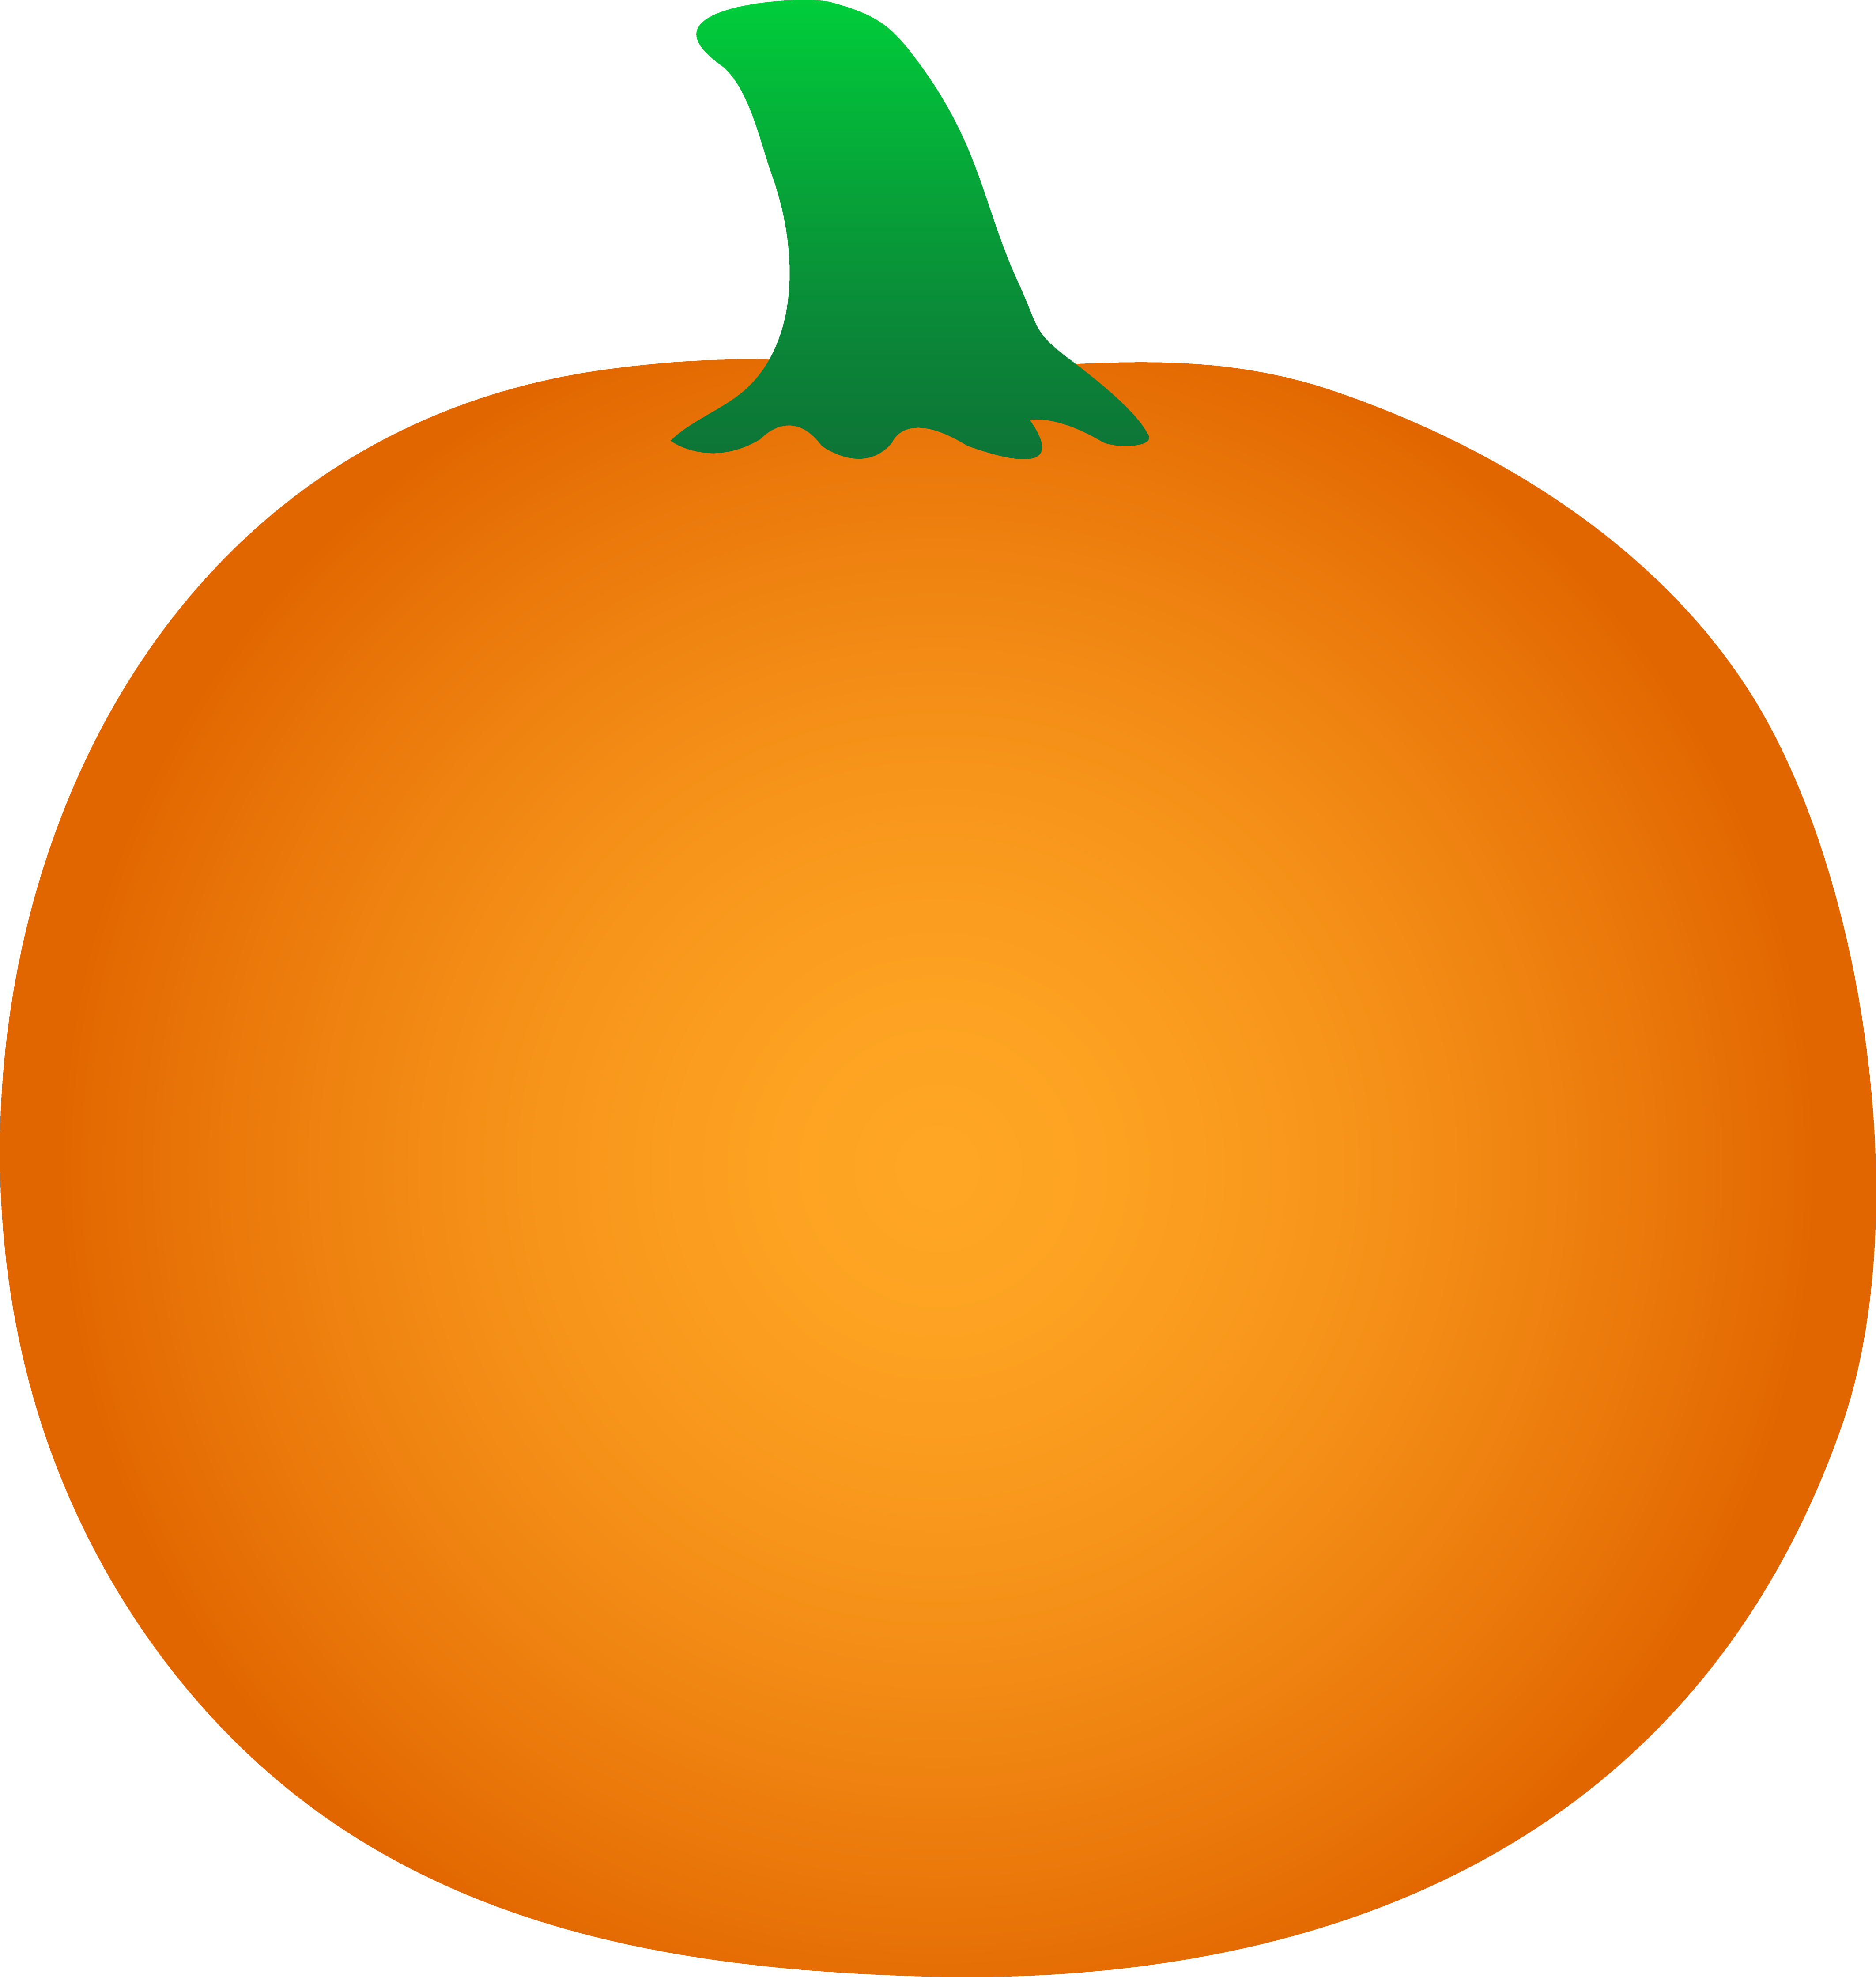 Pumpkin Smiley Face Clip Art - Orange Pumpkin Template (4249x4477)